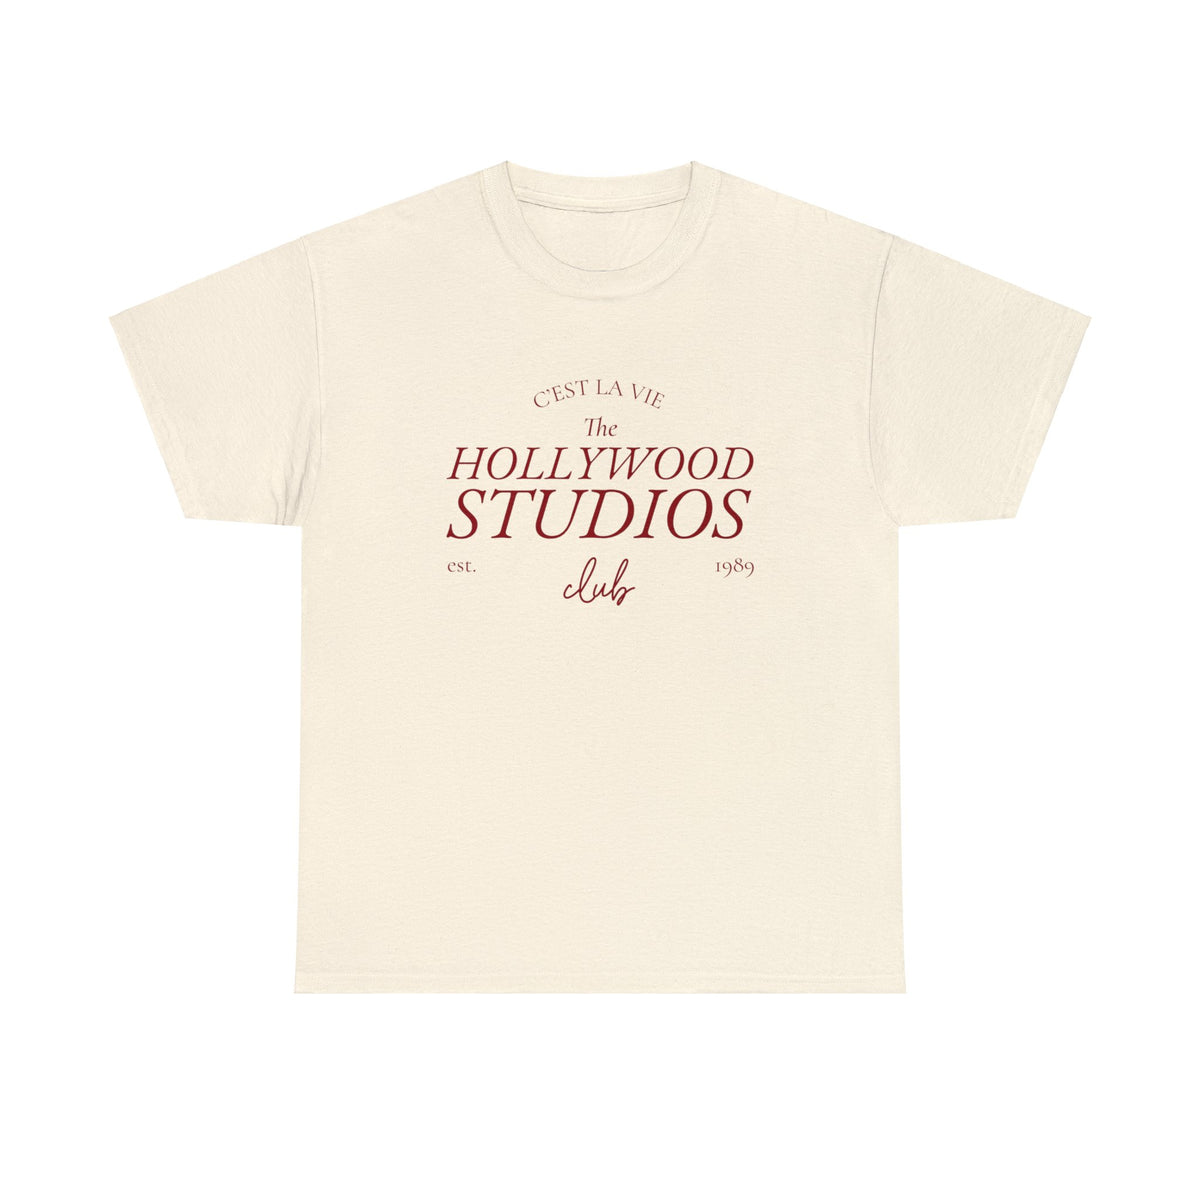 C&#39;est La Vie The Hollywood Studios Club Parks Shirt